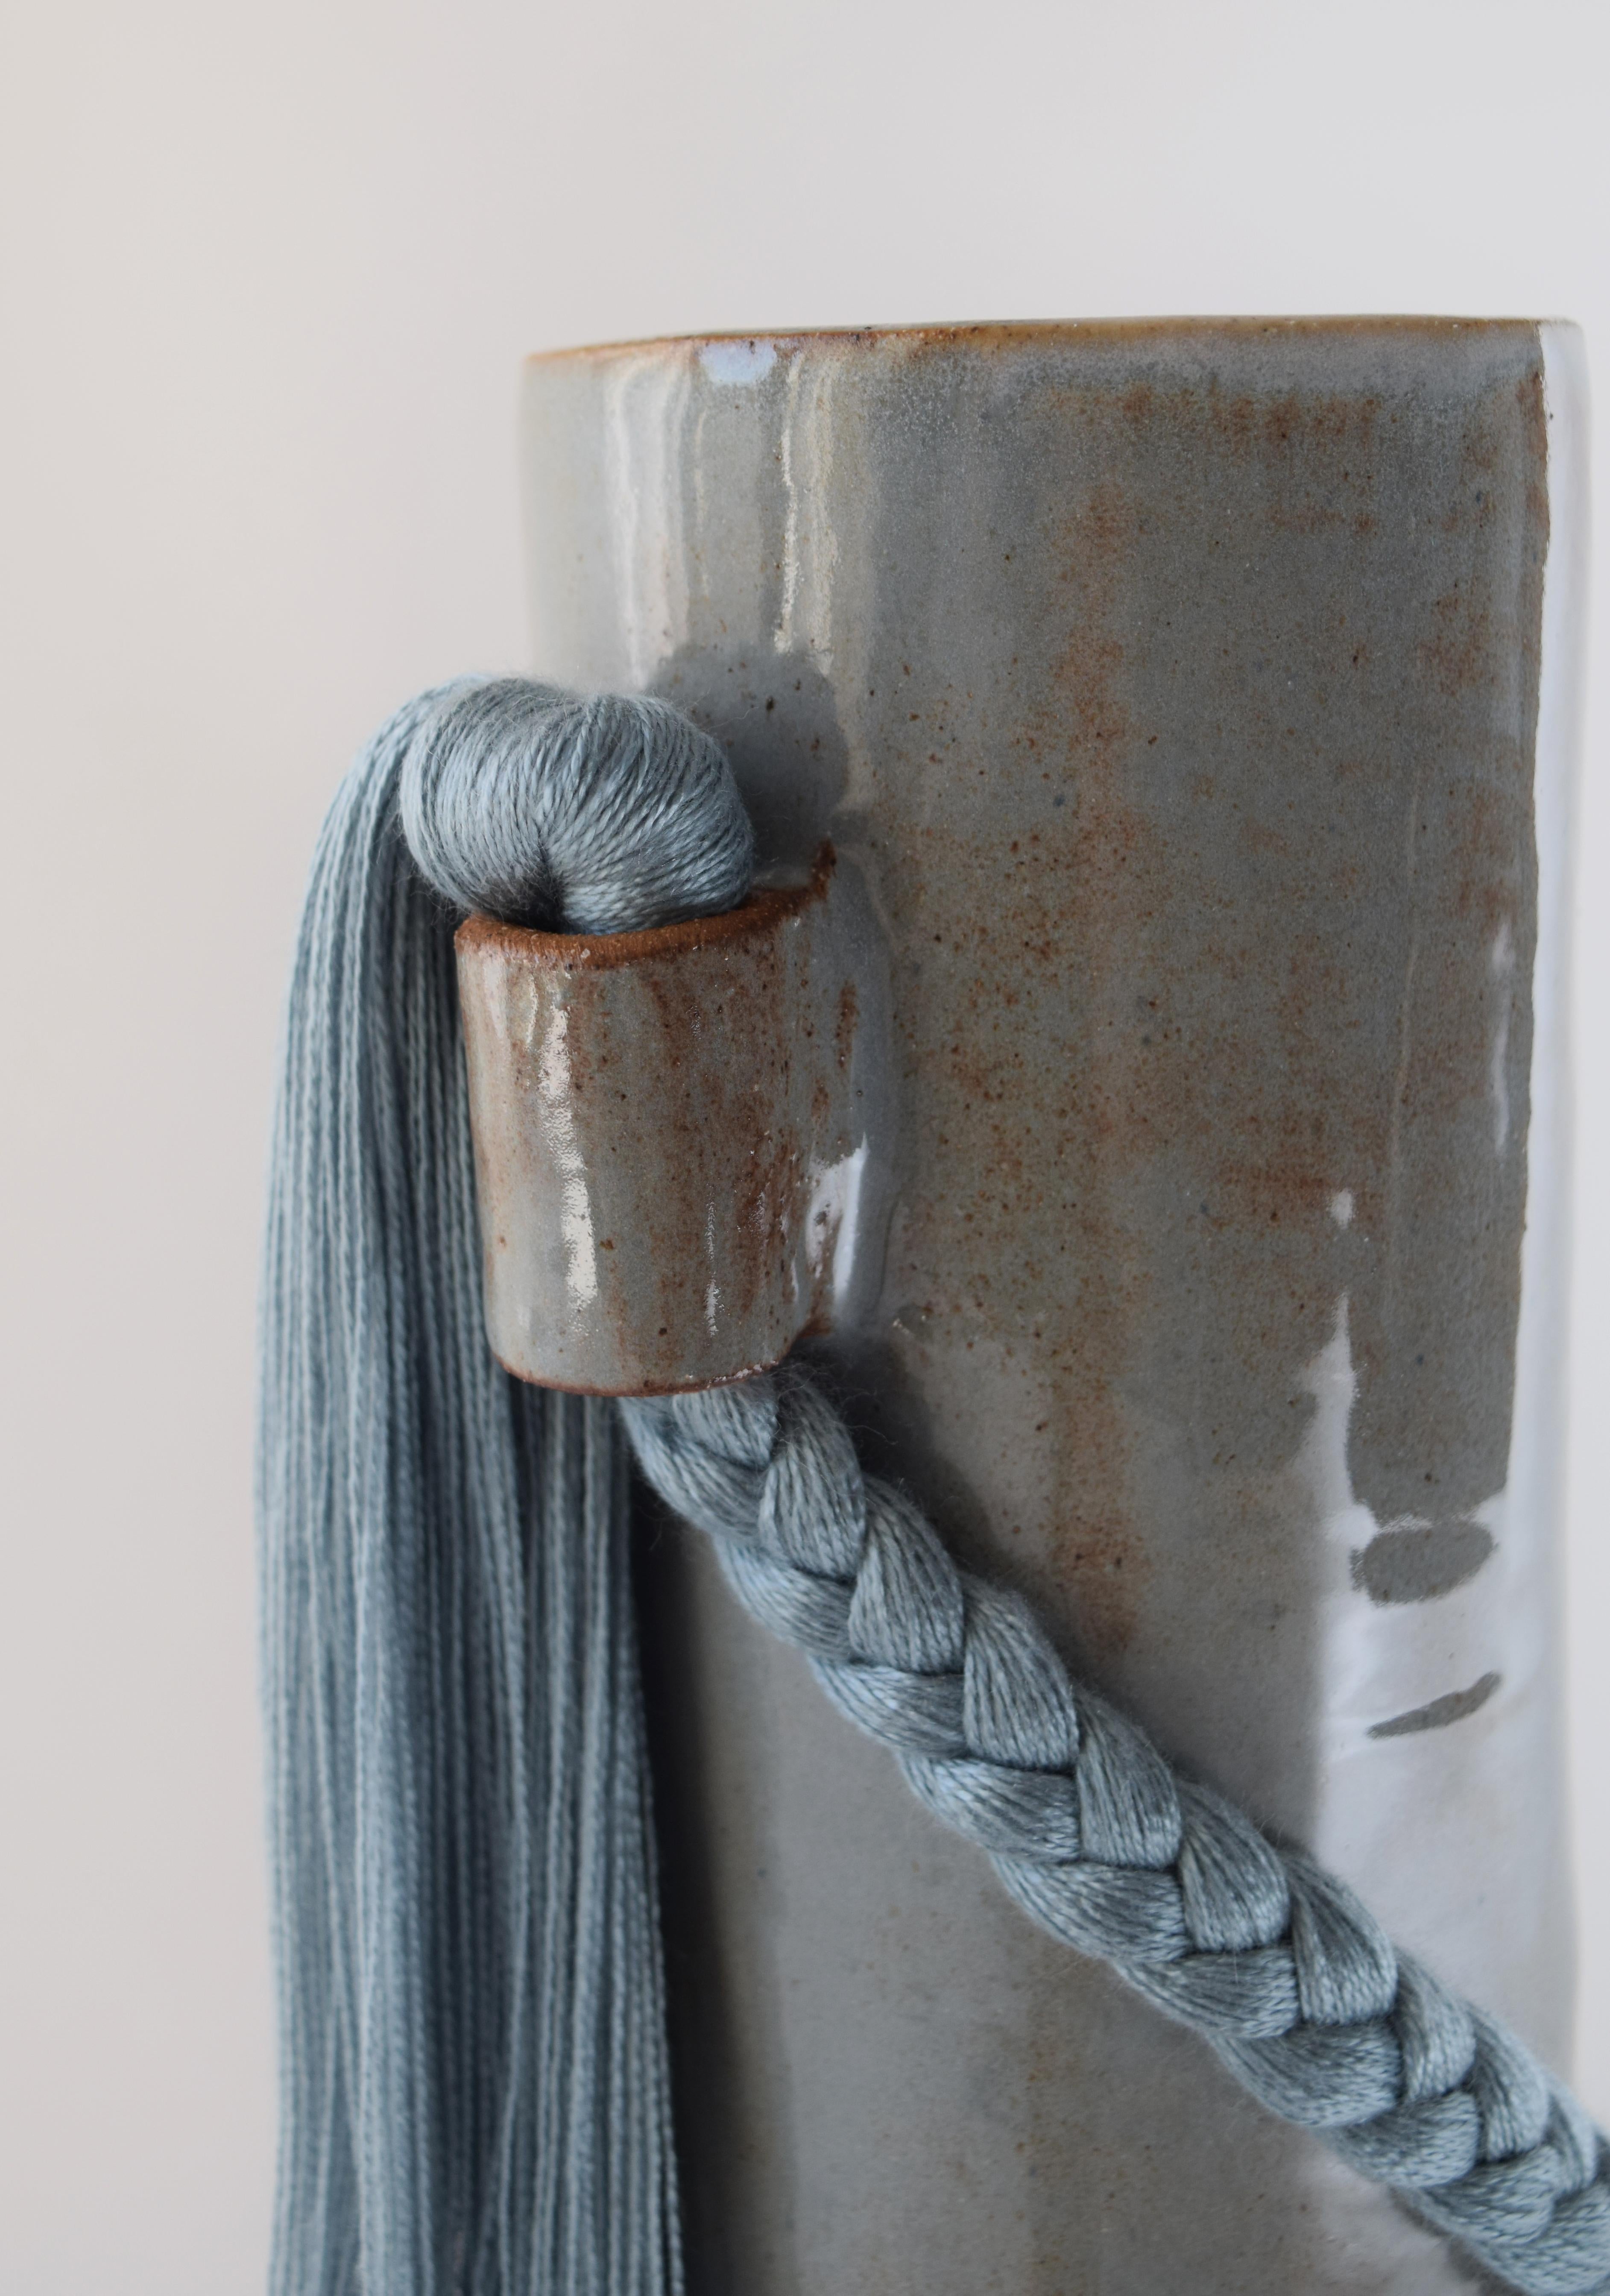 Américain Vase en céramique fait à la main n° 695 en bleu clair avec tresse et frange en tencel bleu en vente